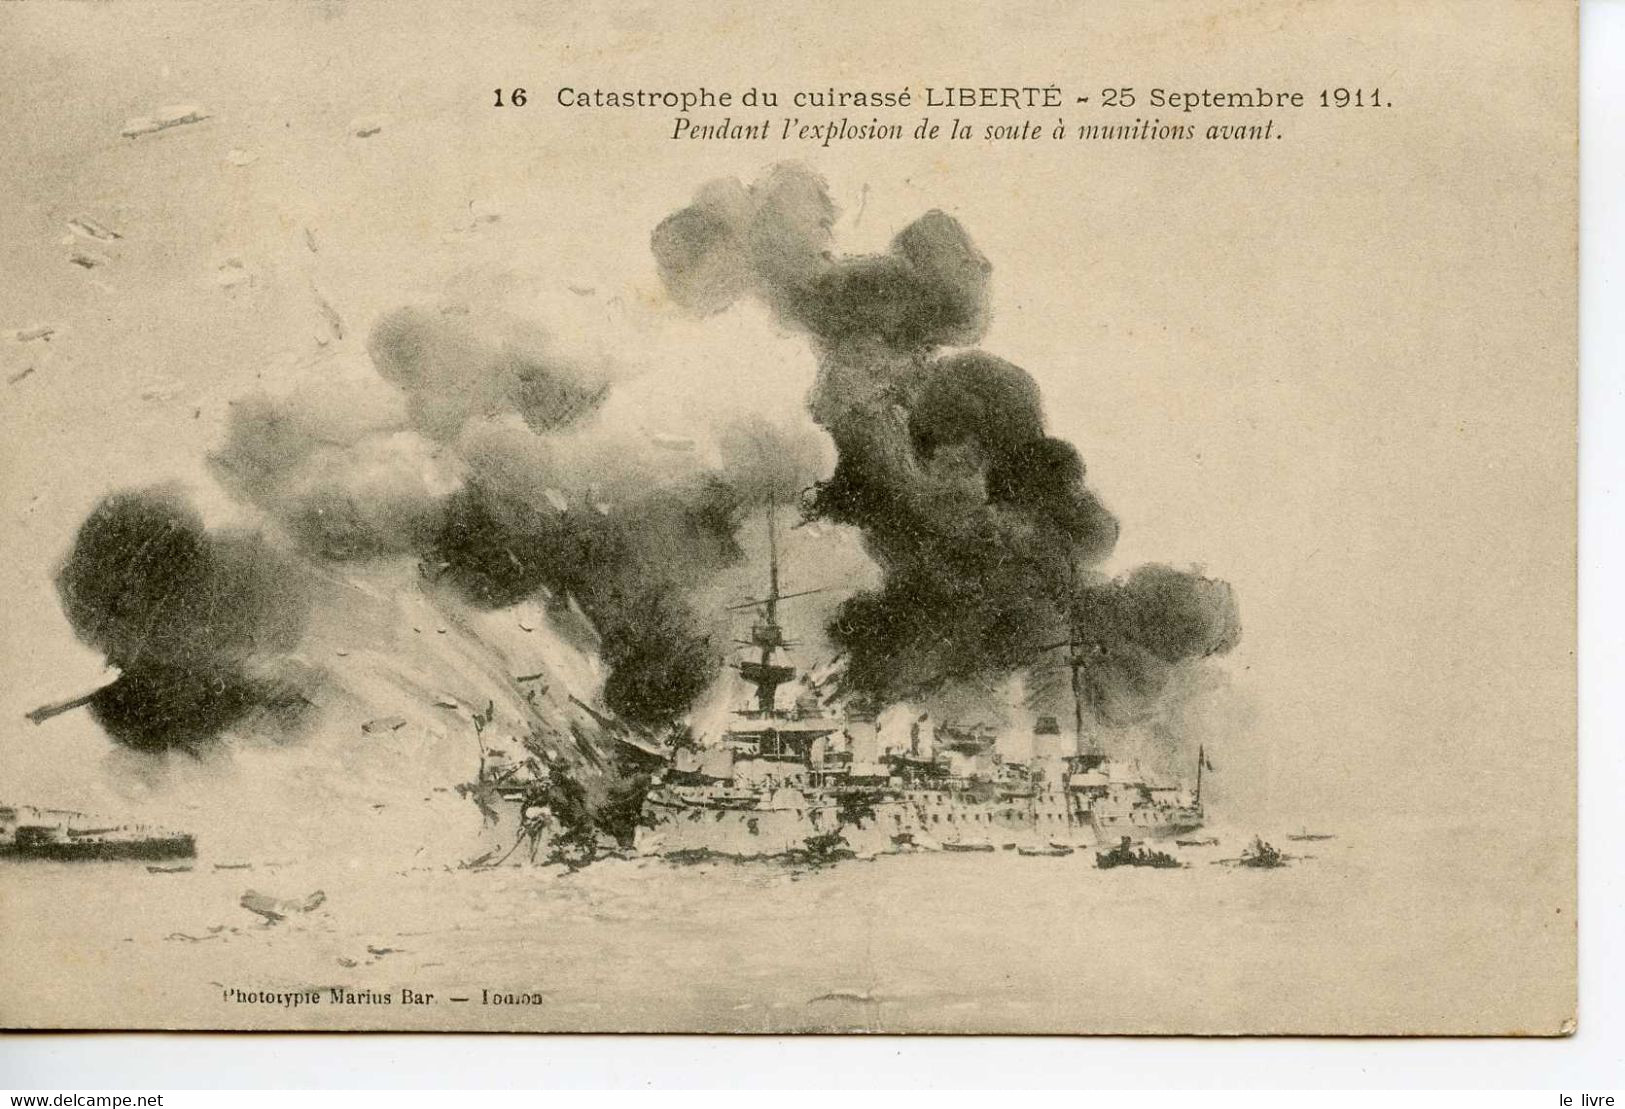 CPA 83 TOULON. CATASTROPHE DU CUIRASSE LIBERTE. 1911 PENDANT L'EXPLOSION...